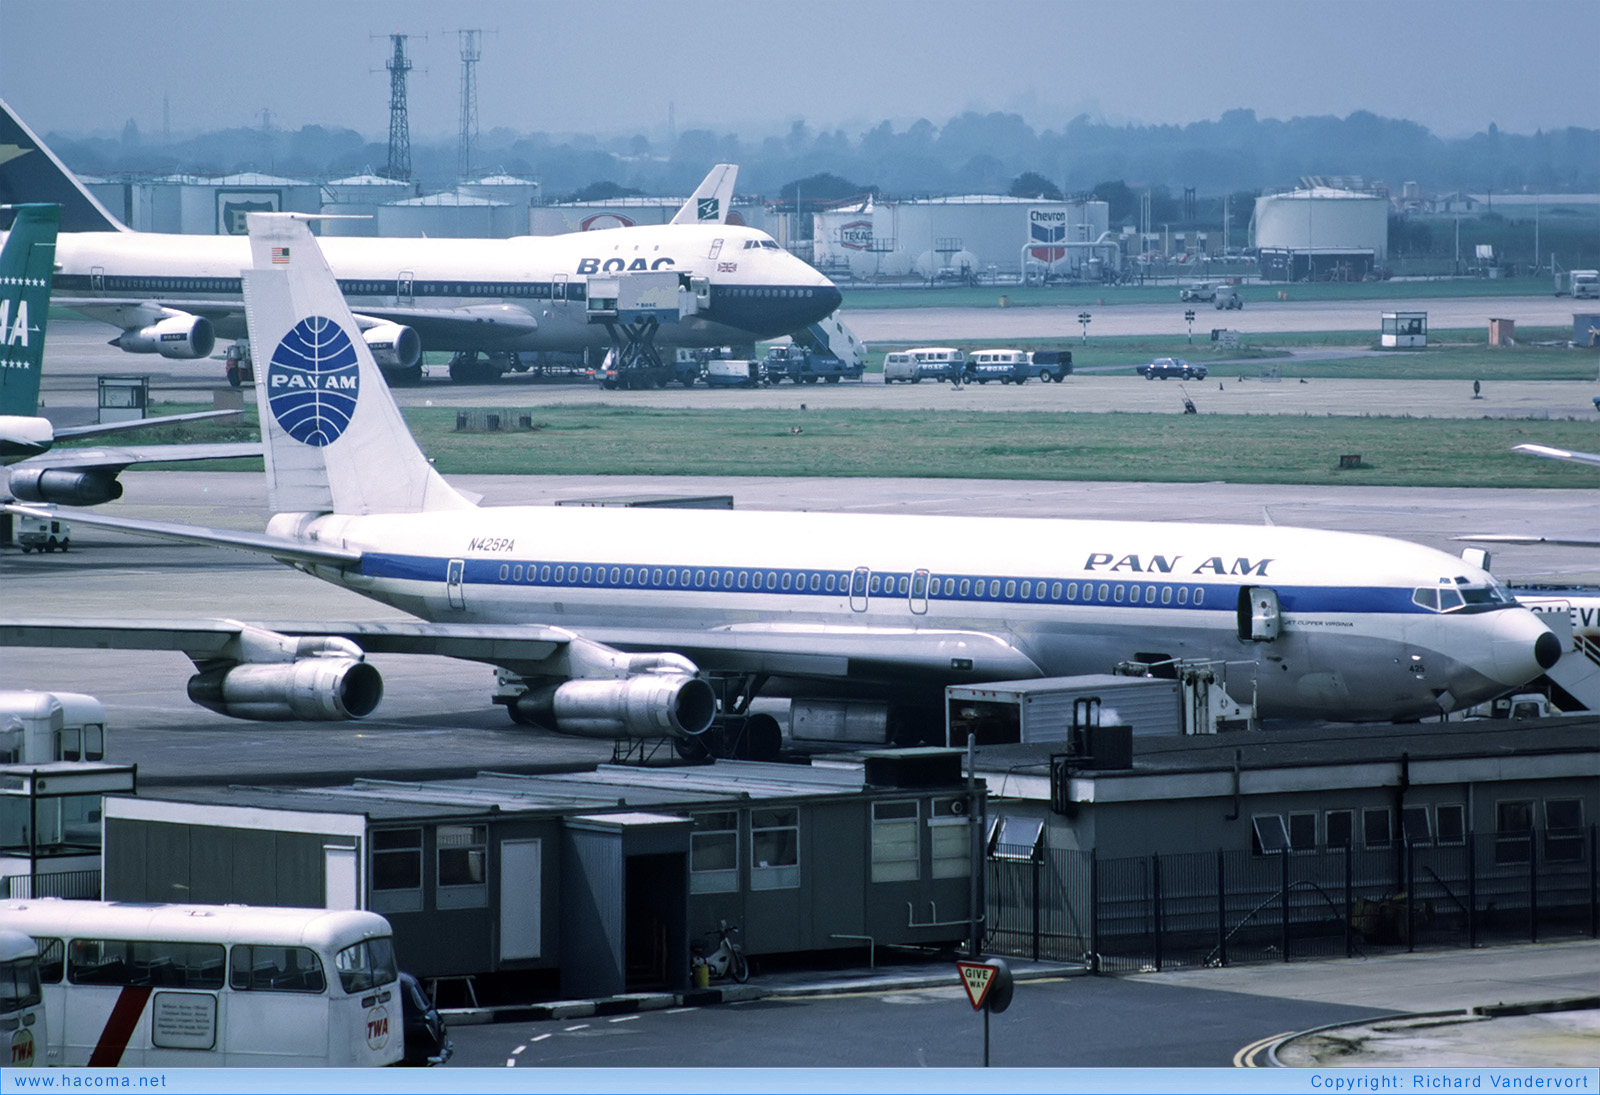 Photo of N425PA - Pan Am Clipper Virginia - London Heathrow Airport - Aug 1972